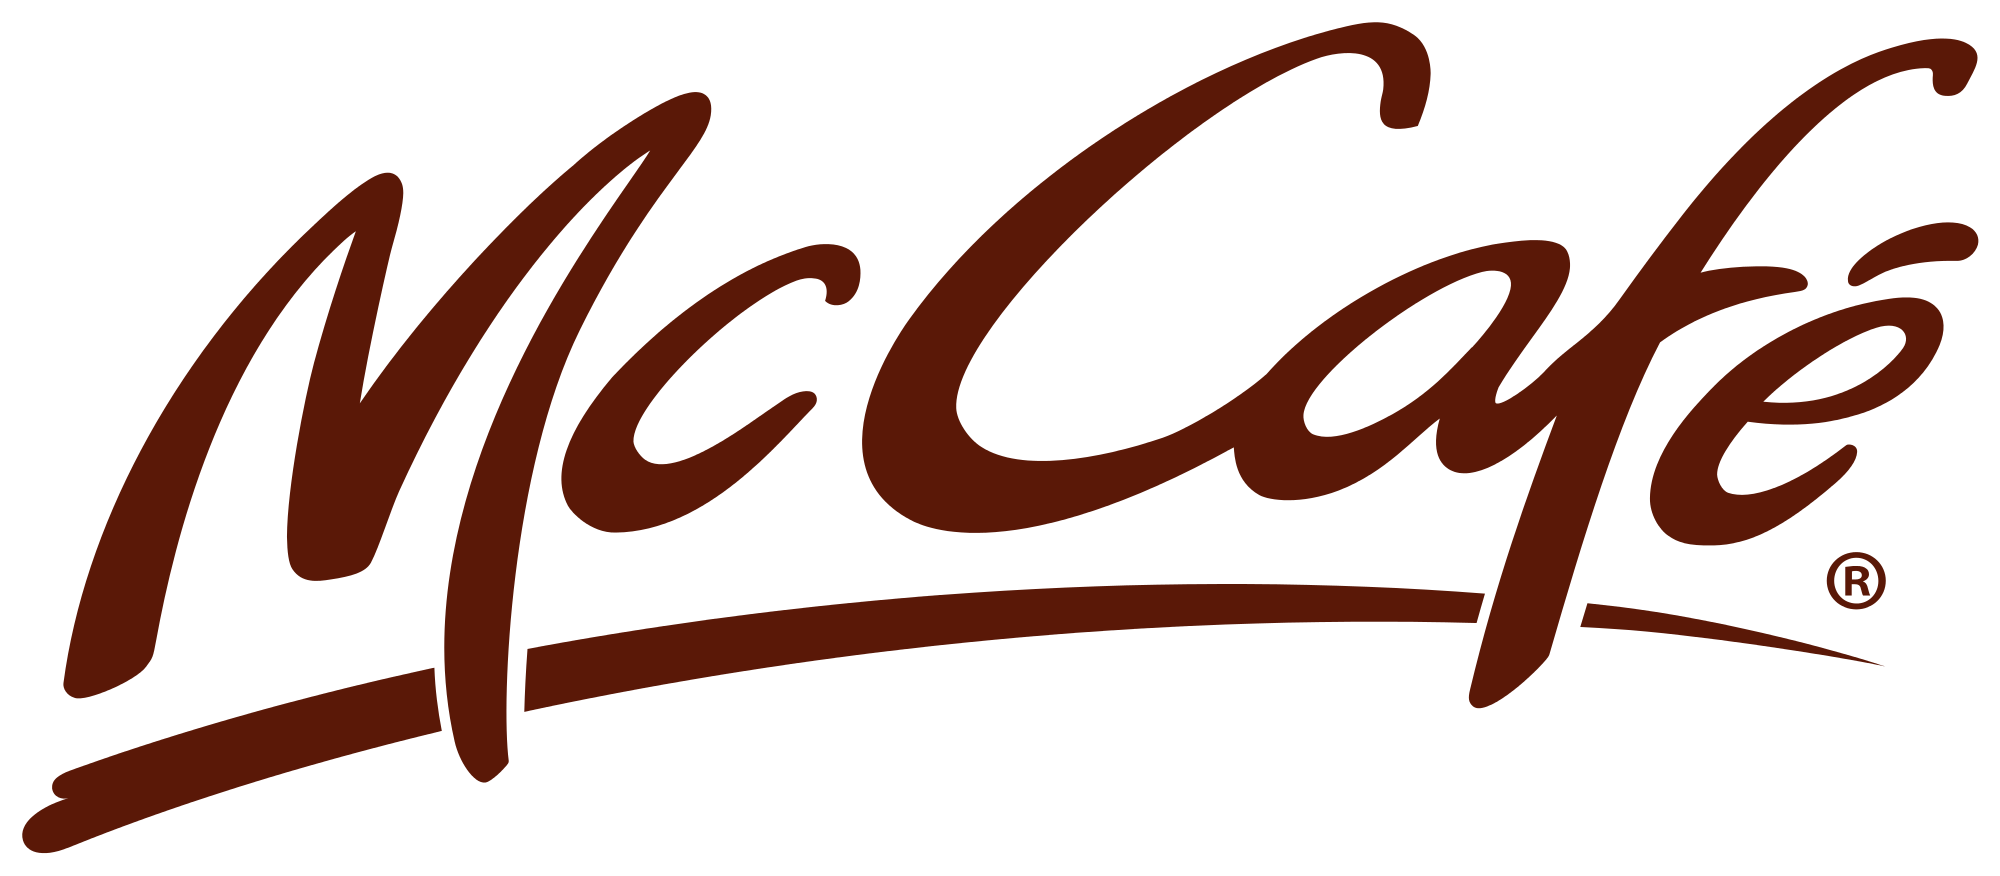 Mc café logo